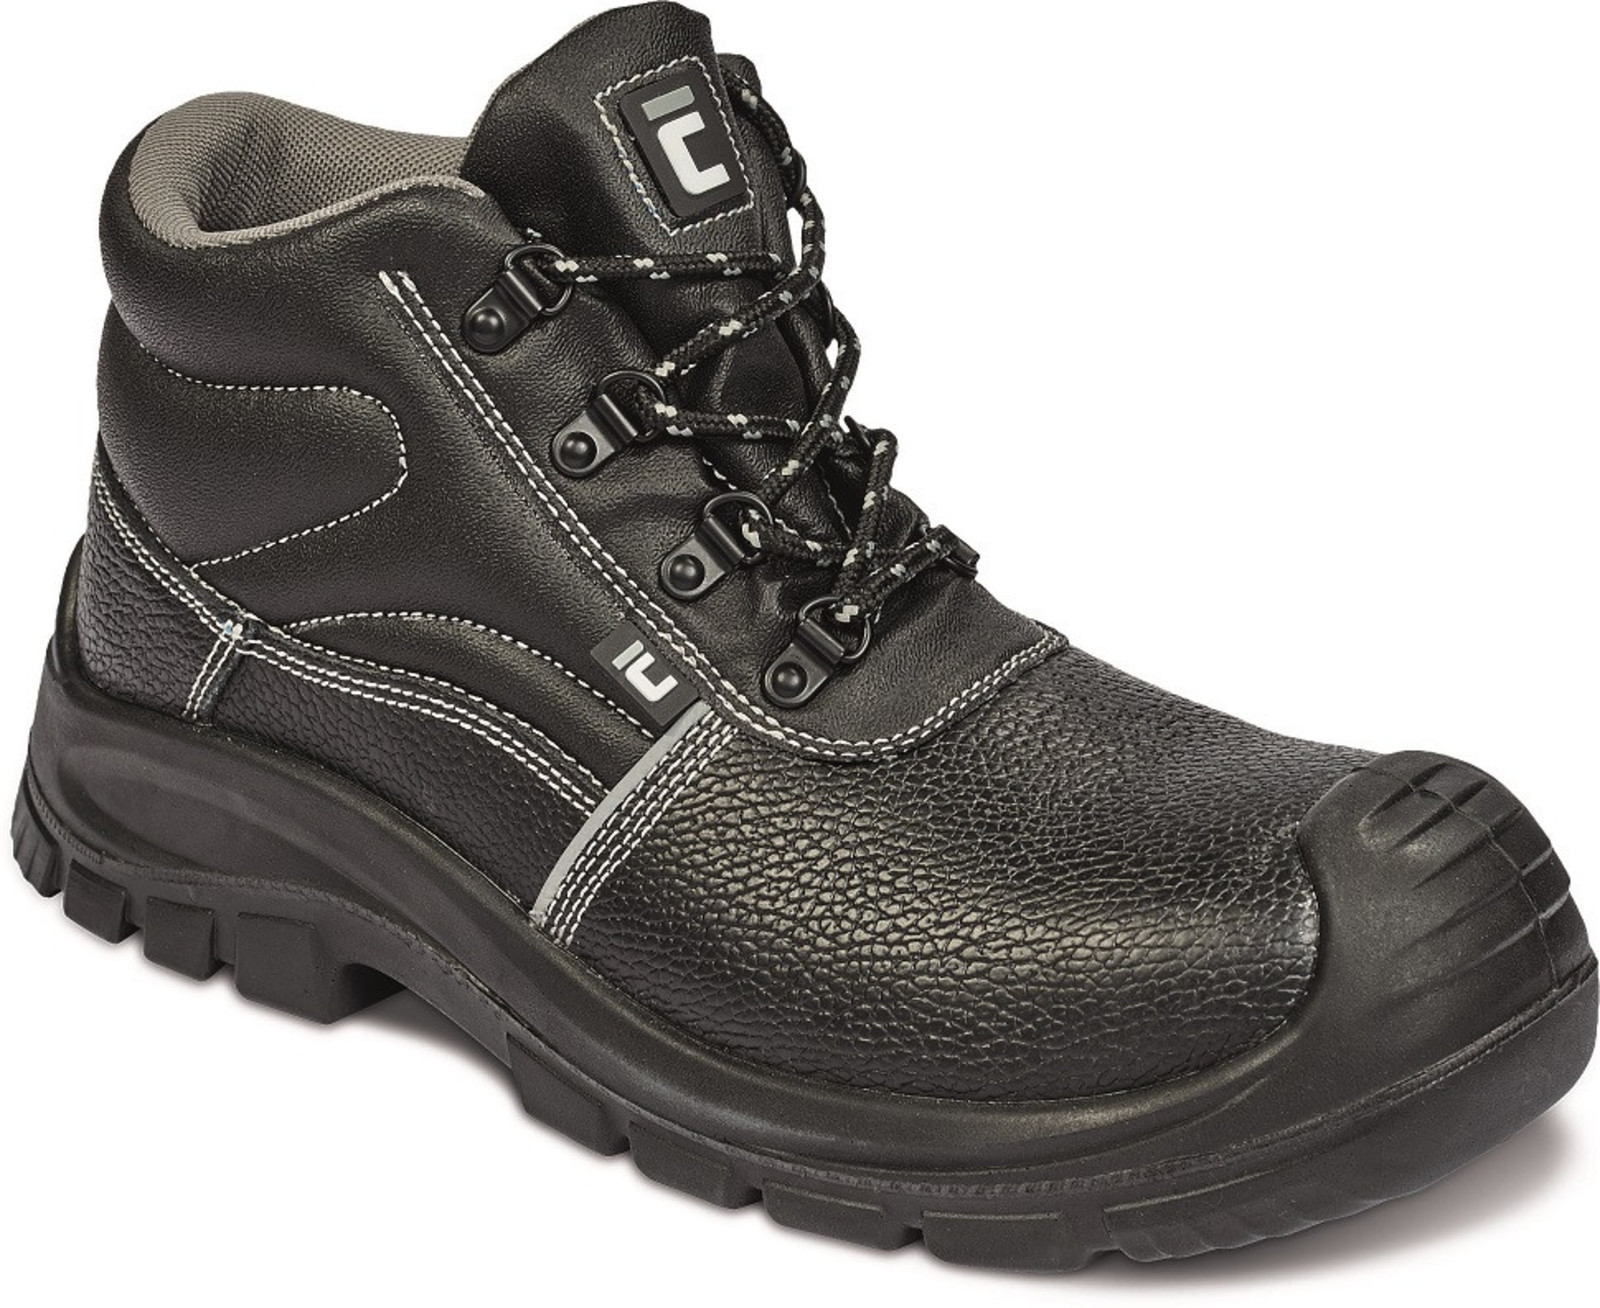 Bezpečnostná obuv Raven XT S3 Metal Free - veľkosť: 45, farba: čierna